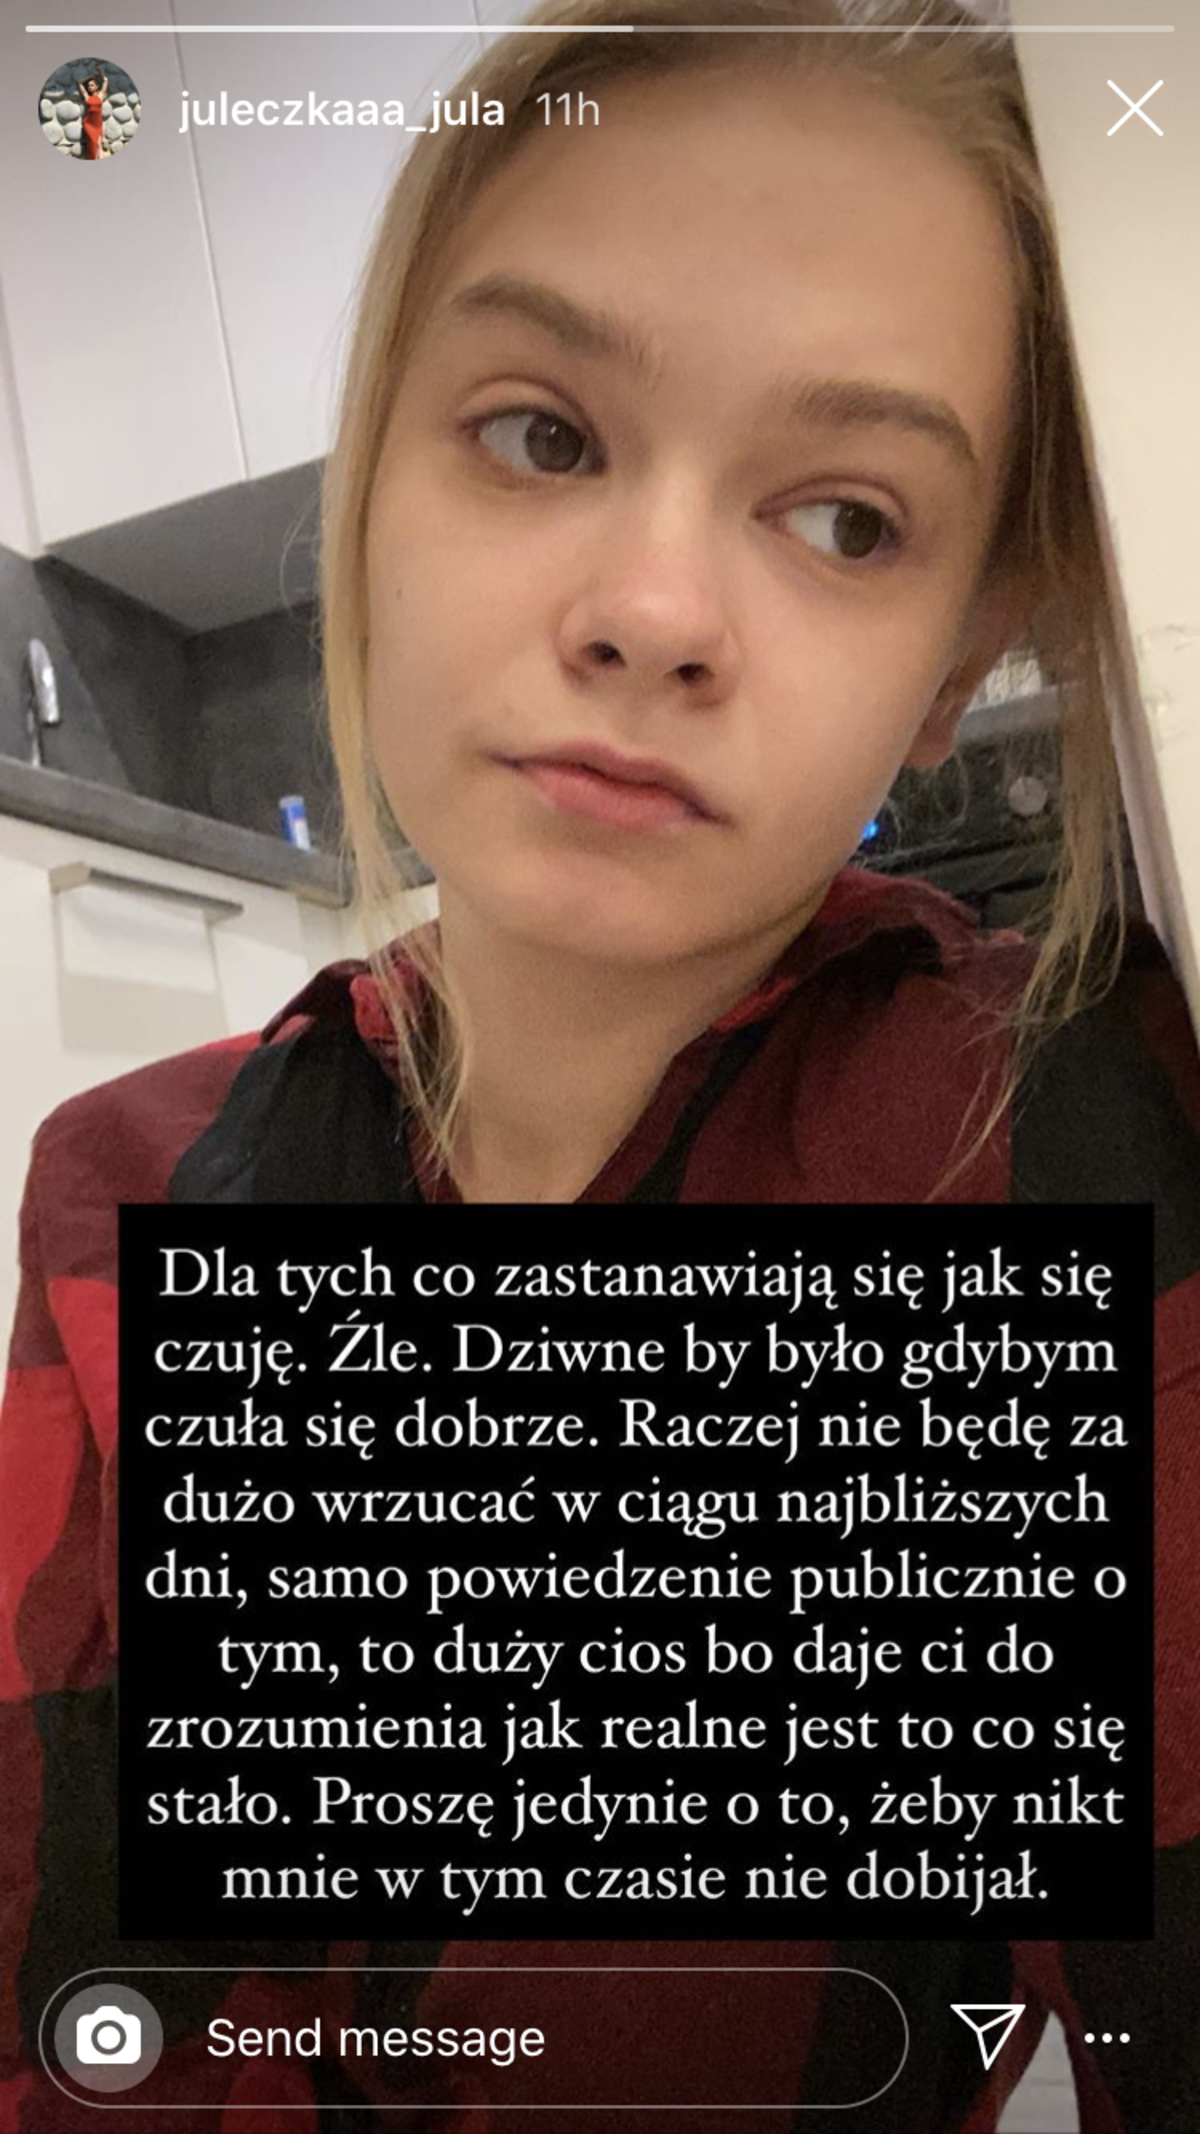 Julia Wróblewska porzucona przez chłopaka